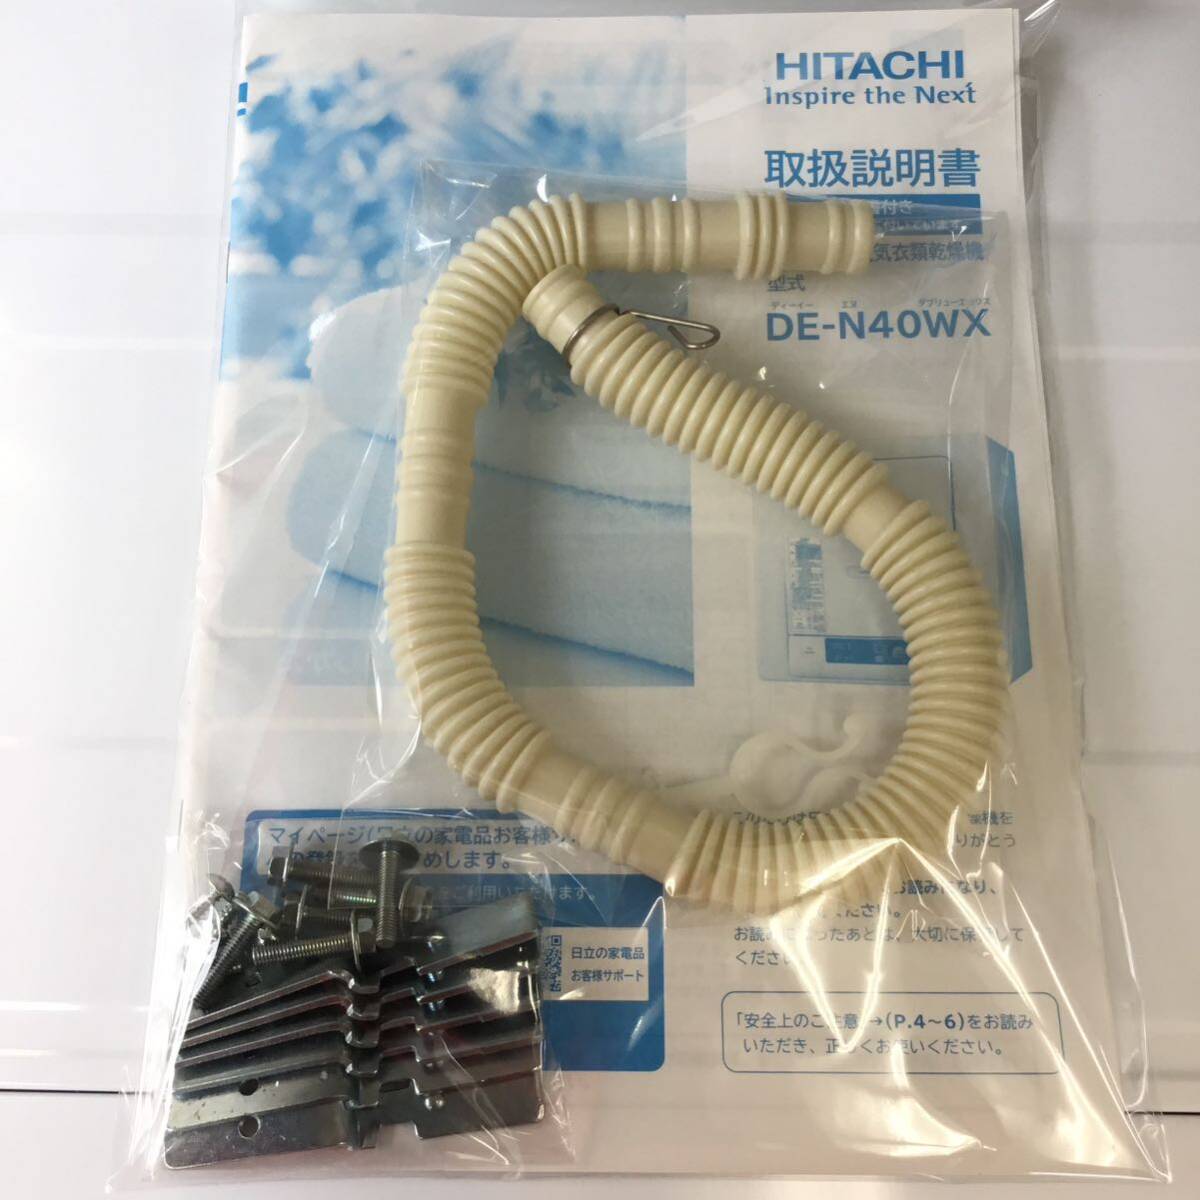 HITACHI Hitachi 2021 year made dehumidification shape electric dryer DE-N40WX *HA18